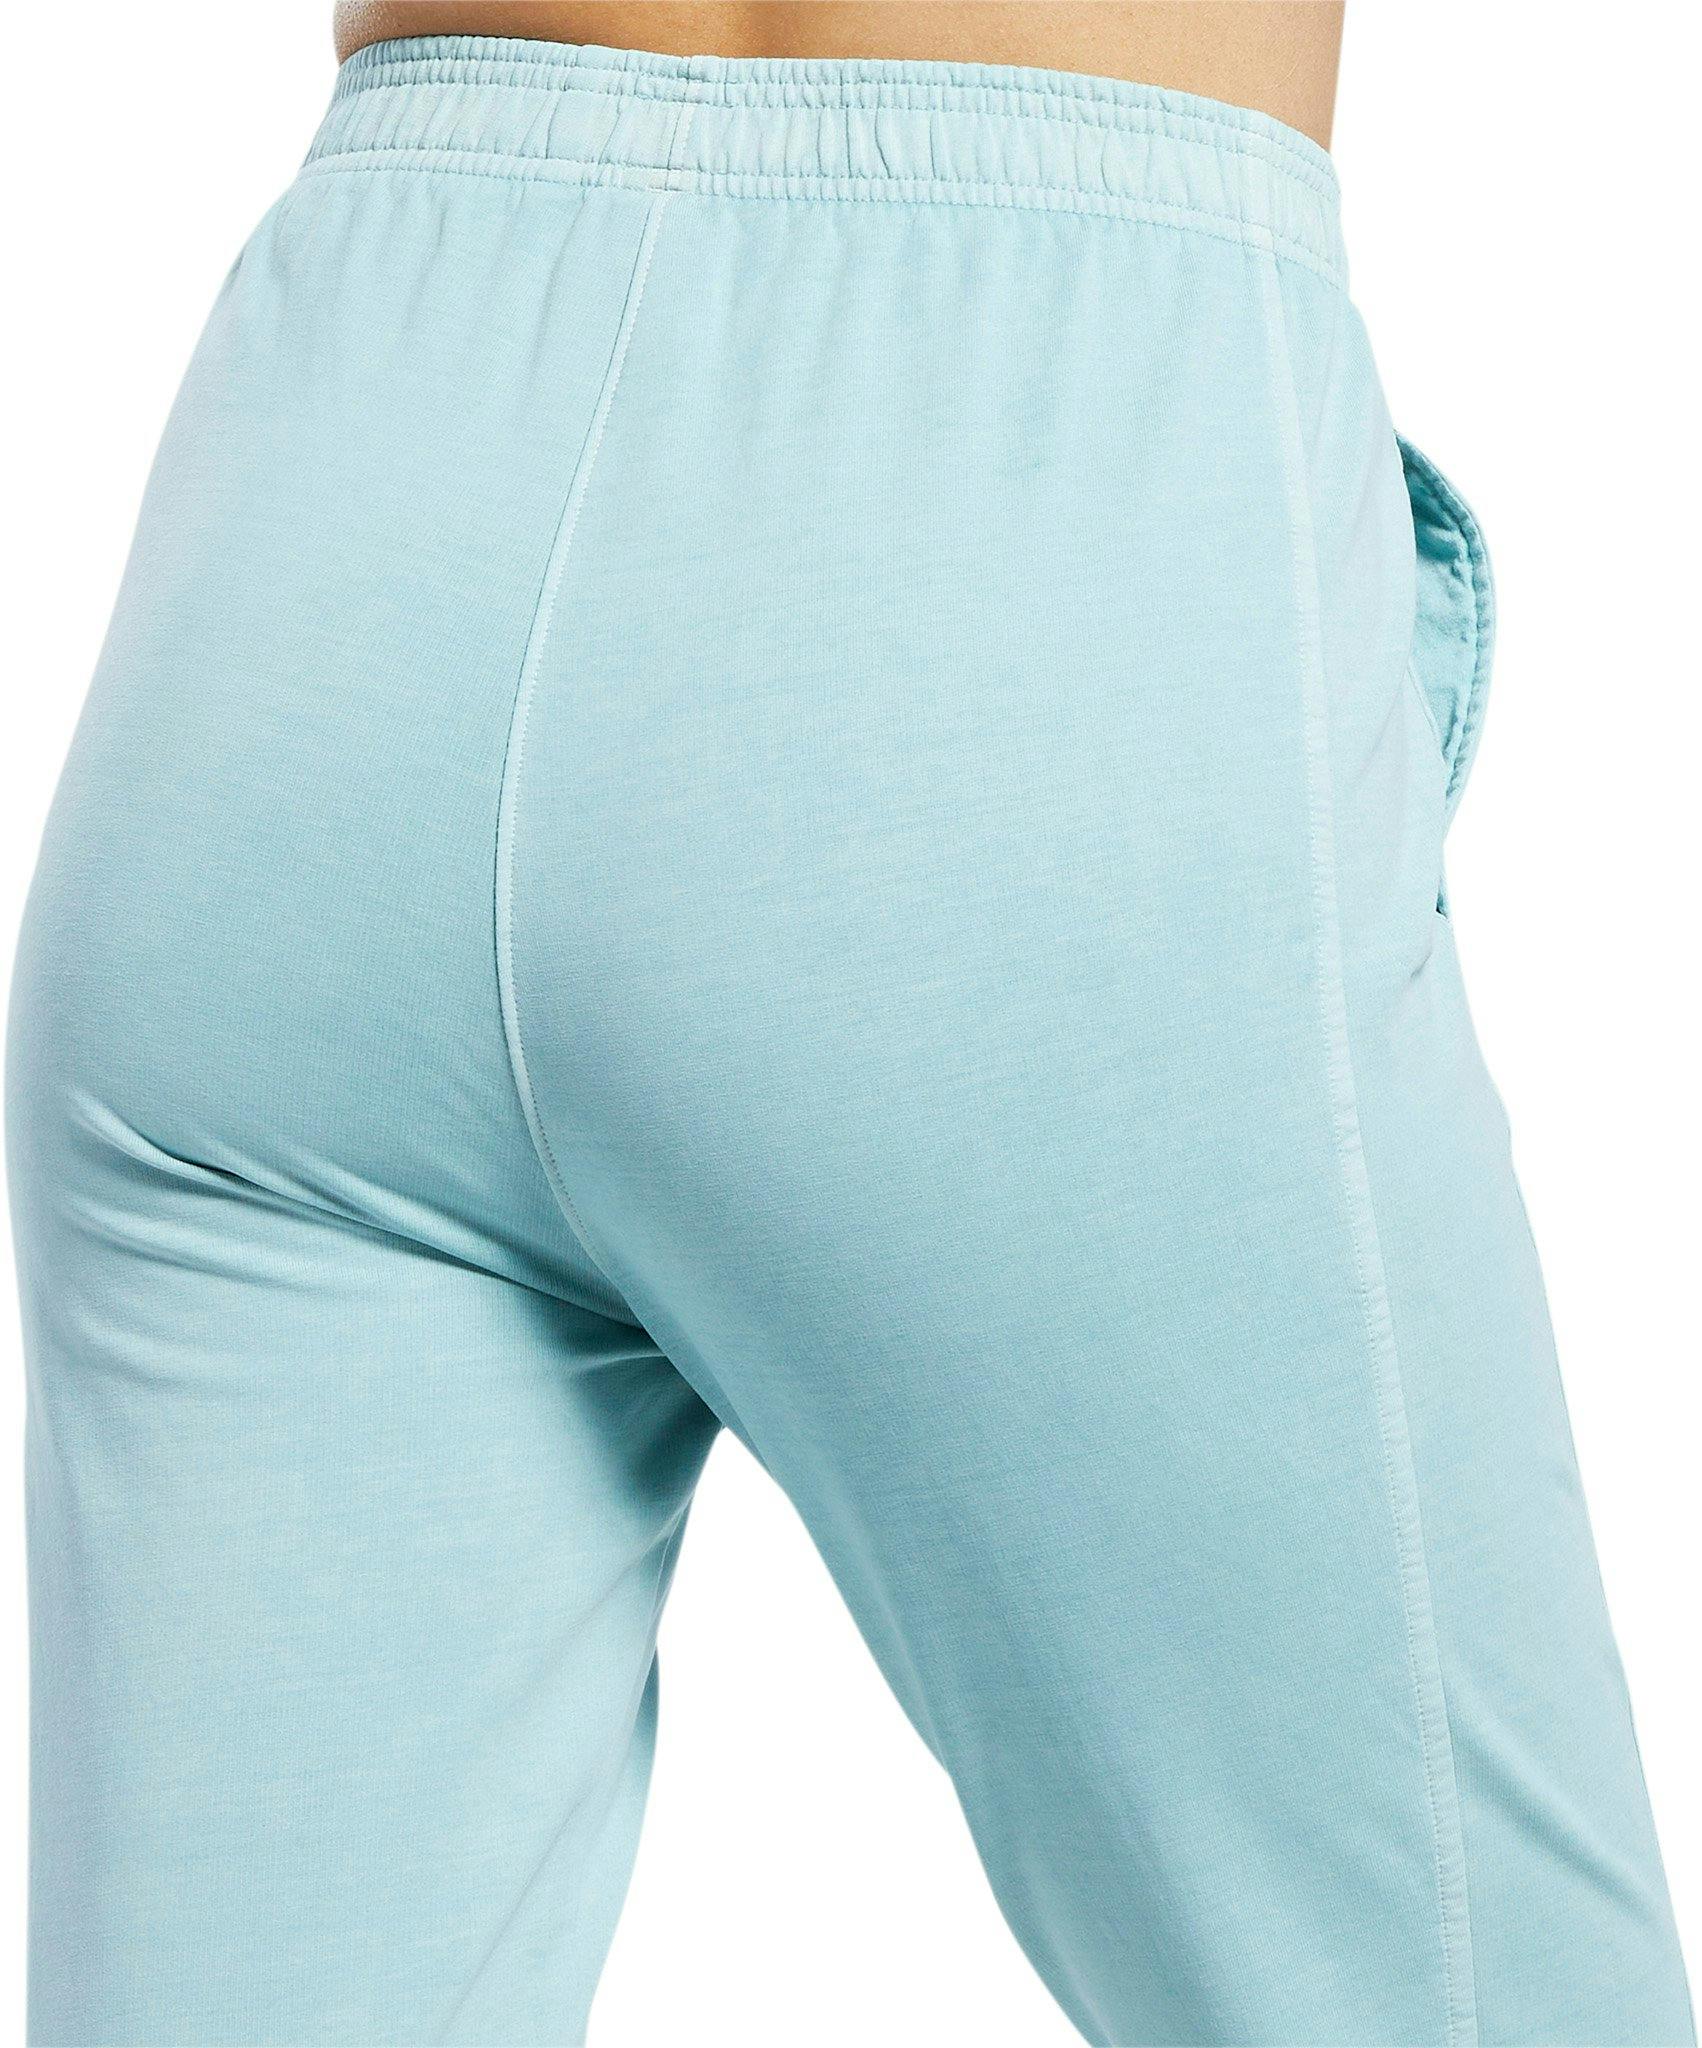 Numéro de l'image de la galerie de produits 5 pour le produit Pantalon jogger ajusté teinture naturelle Classics - Femme